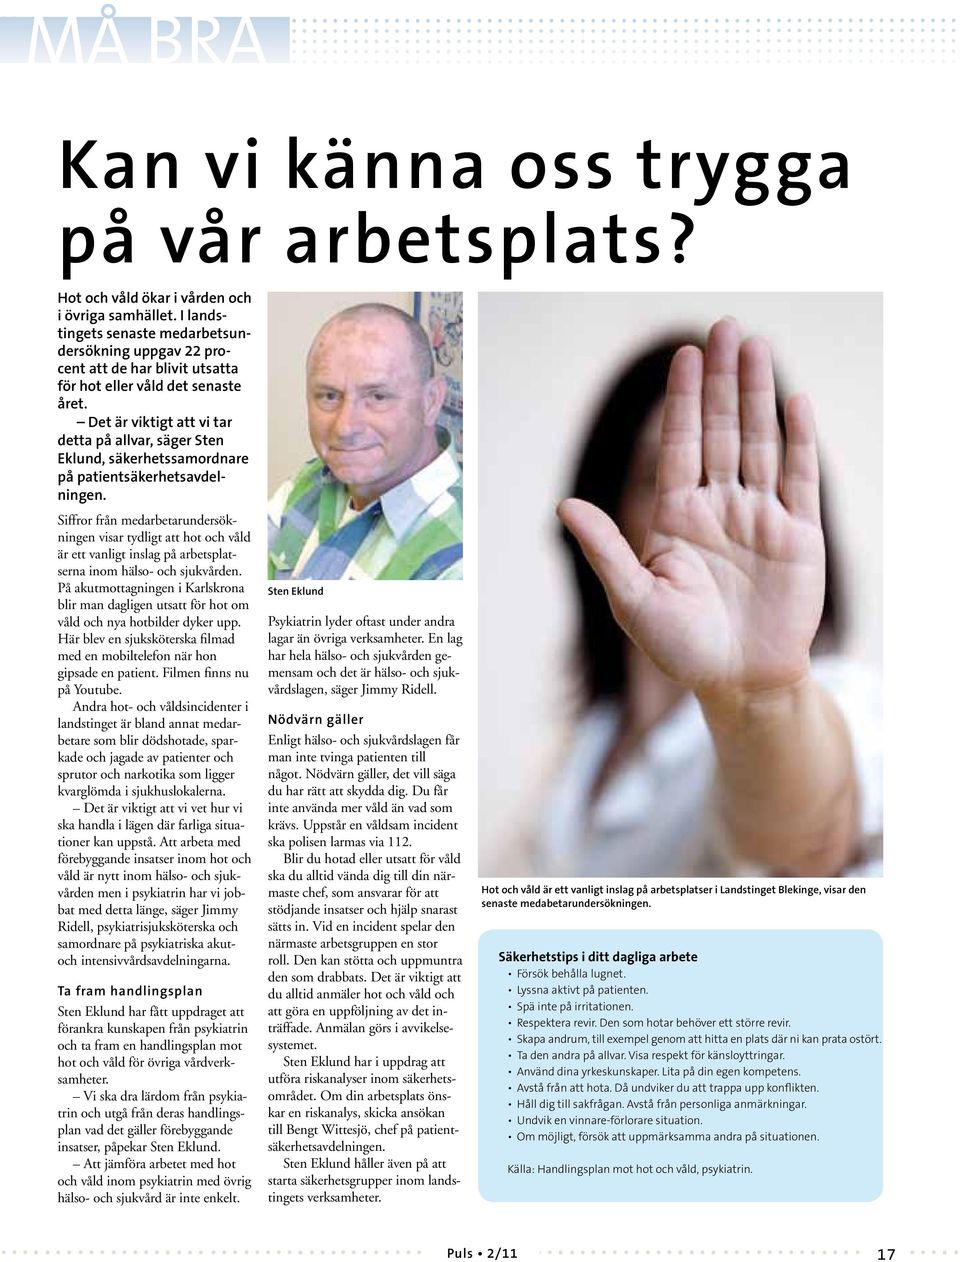 Det är viktigt att vi tar detta på allvar, säger Sten Eklund, säkerhetssamordnare på patientsäkerhetsavdelningen.